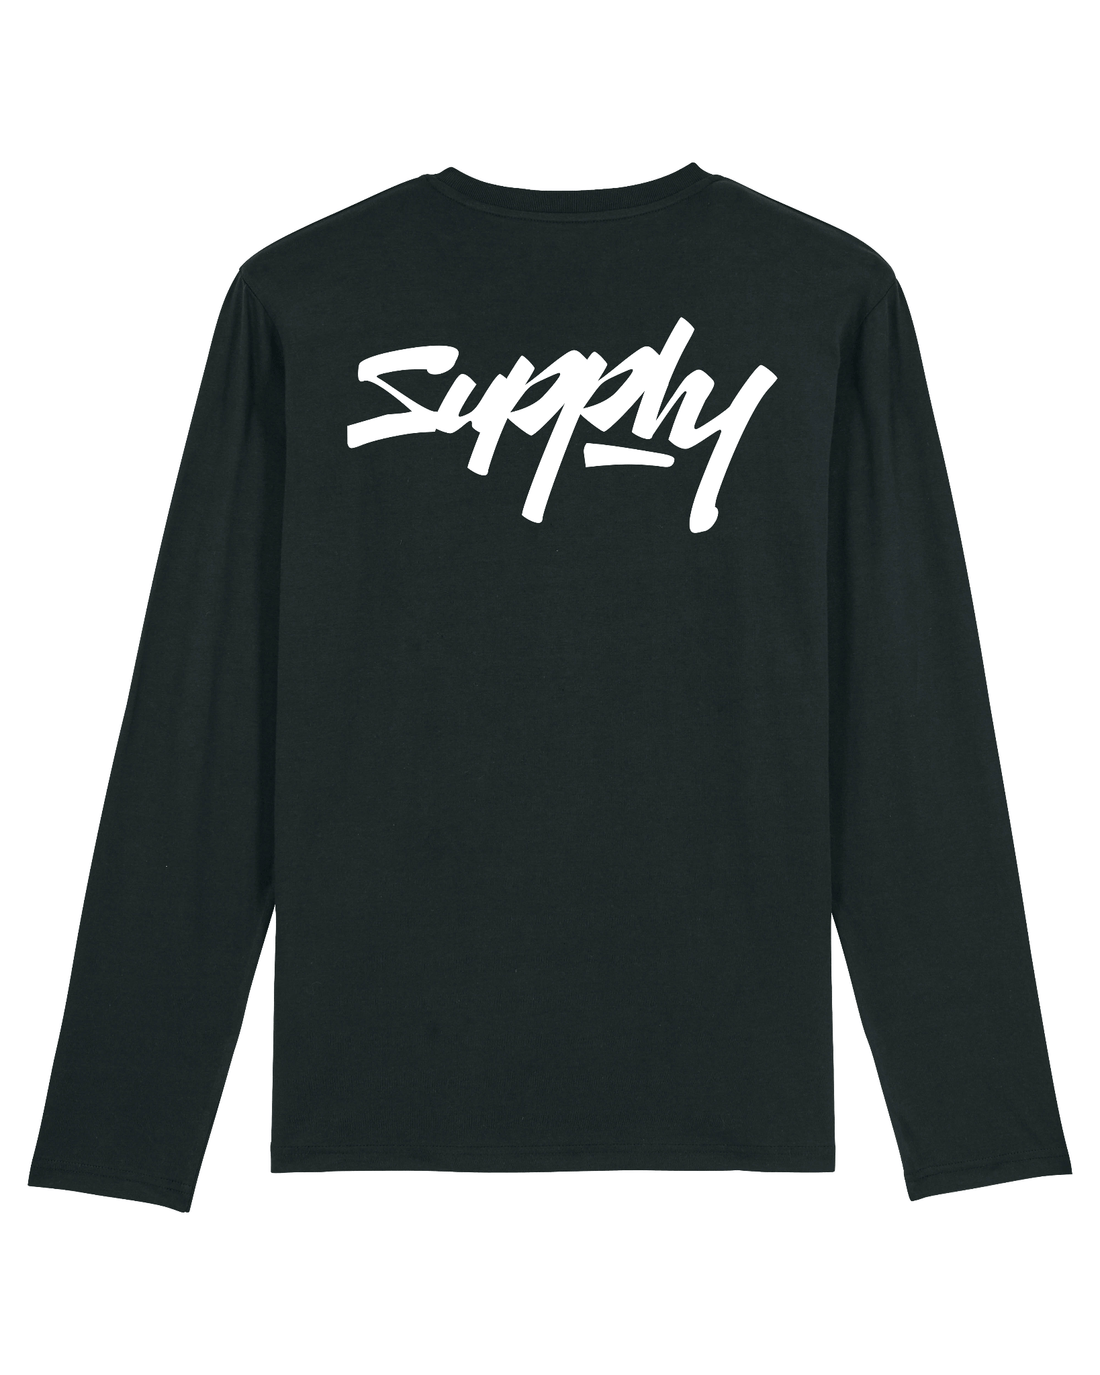 Black Skater Long Sleeve, Supply V2 Back Print